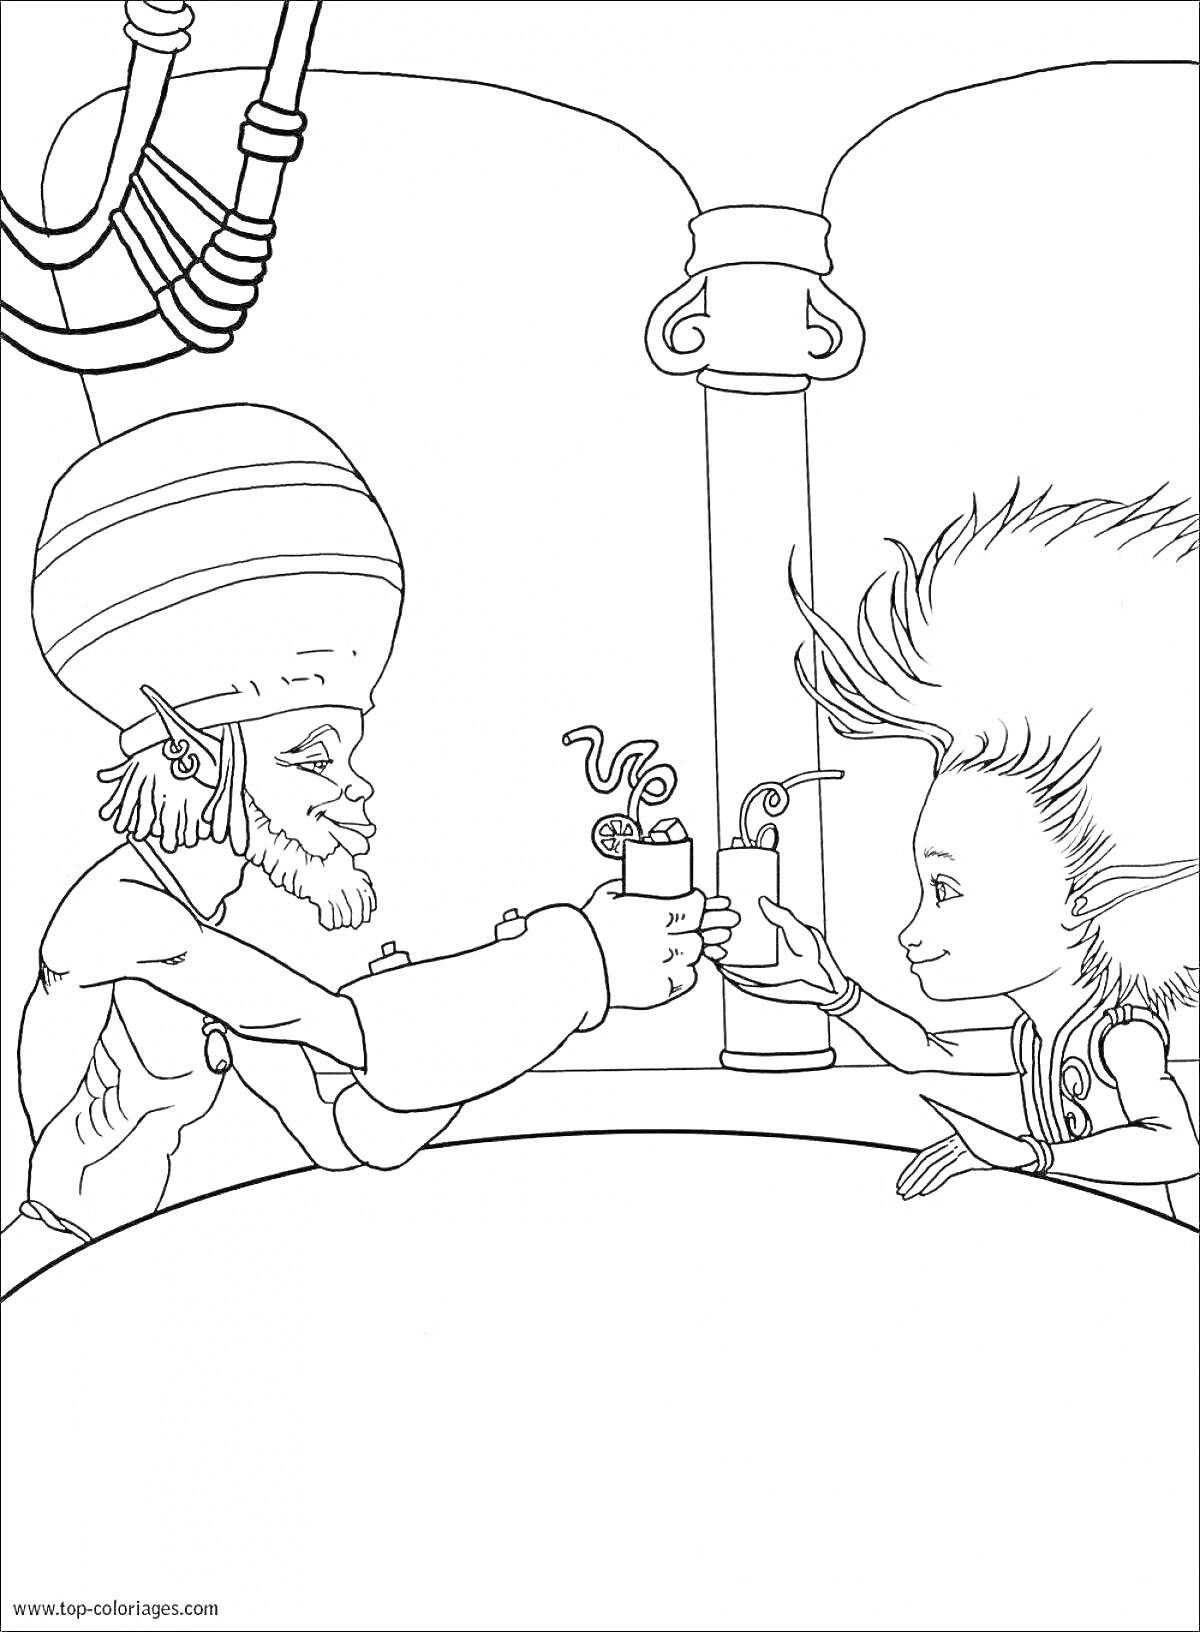 Раскраска Два человека с острыми ушами поднимают тост на фоне цилиндрической колонны и труб